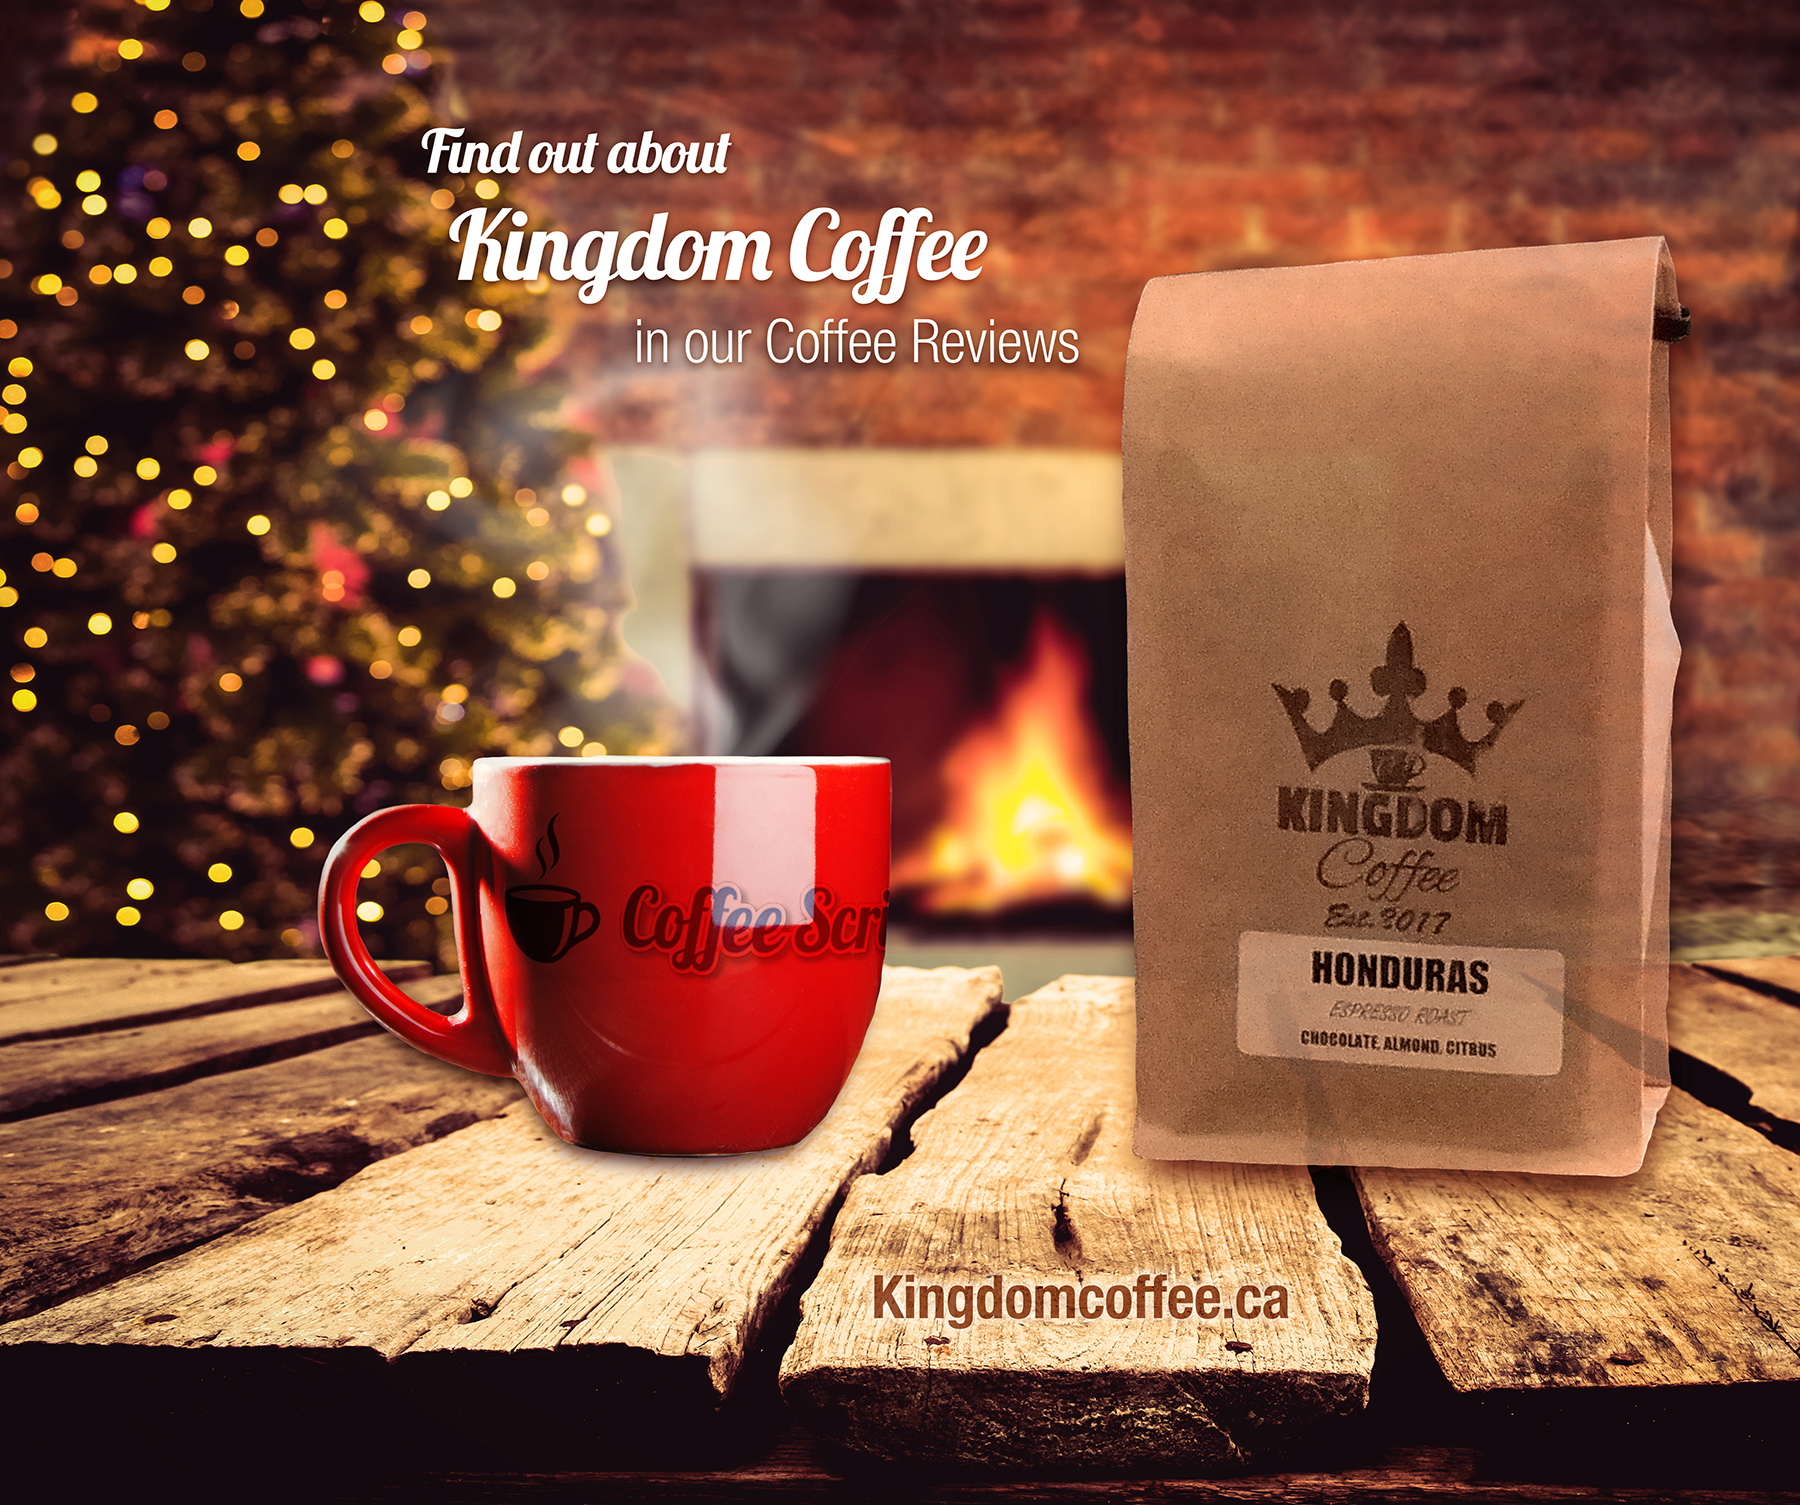 Kingdom Coffee, Kingdom Coffee Calgary